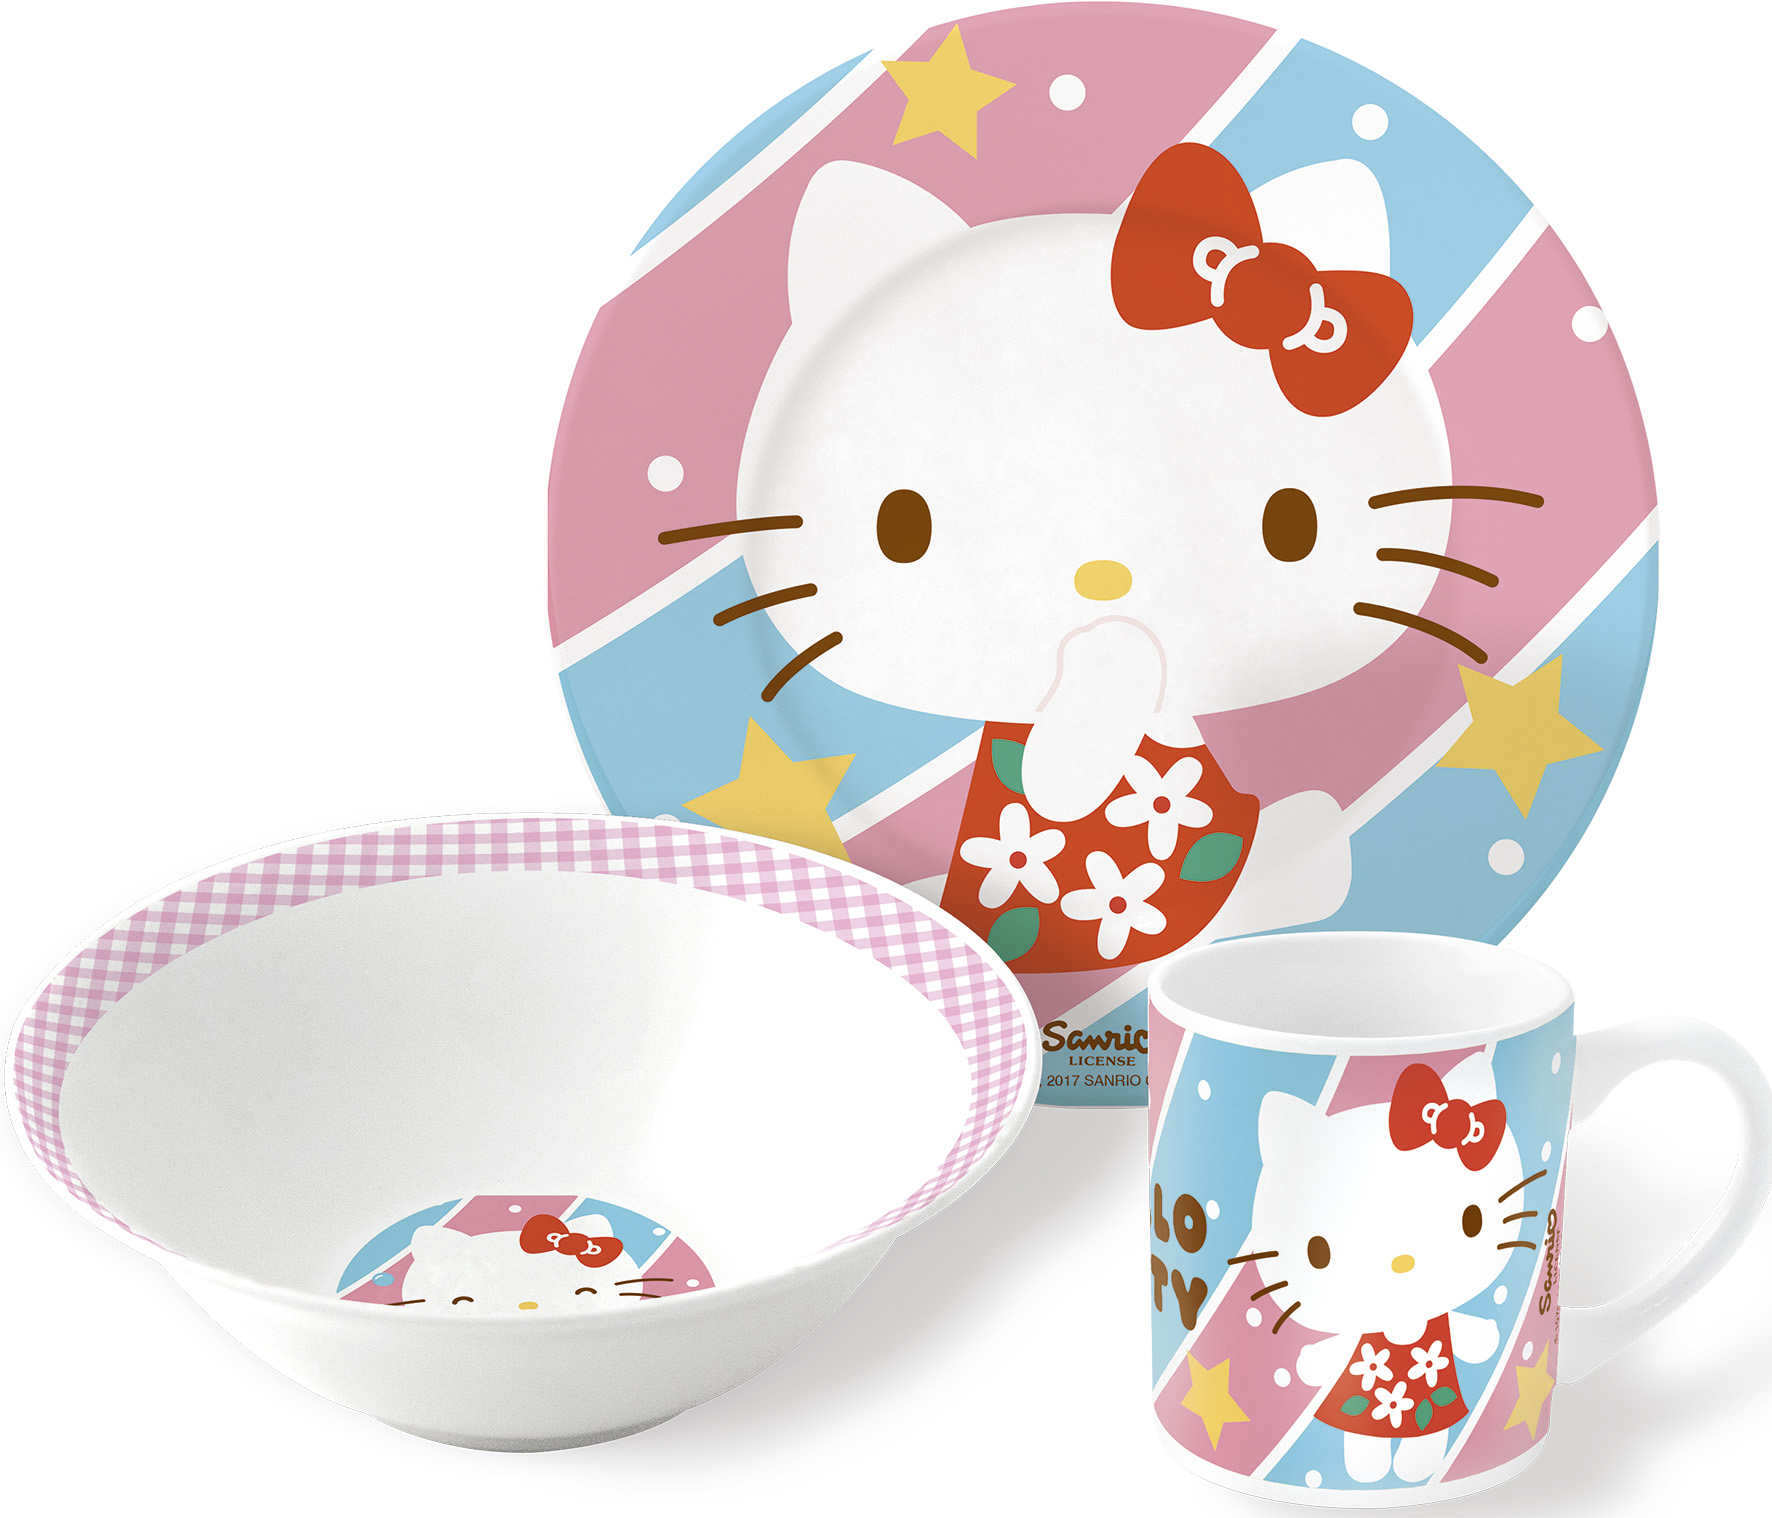 Набор посуды керамической Stor в подарочной упаковке Hello Kitty №4, 46285 stor набор посуды керамической hello kitty 4 3 предмета